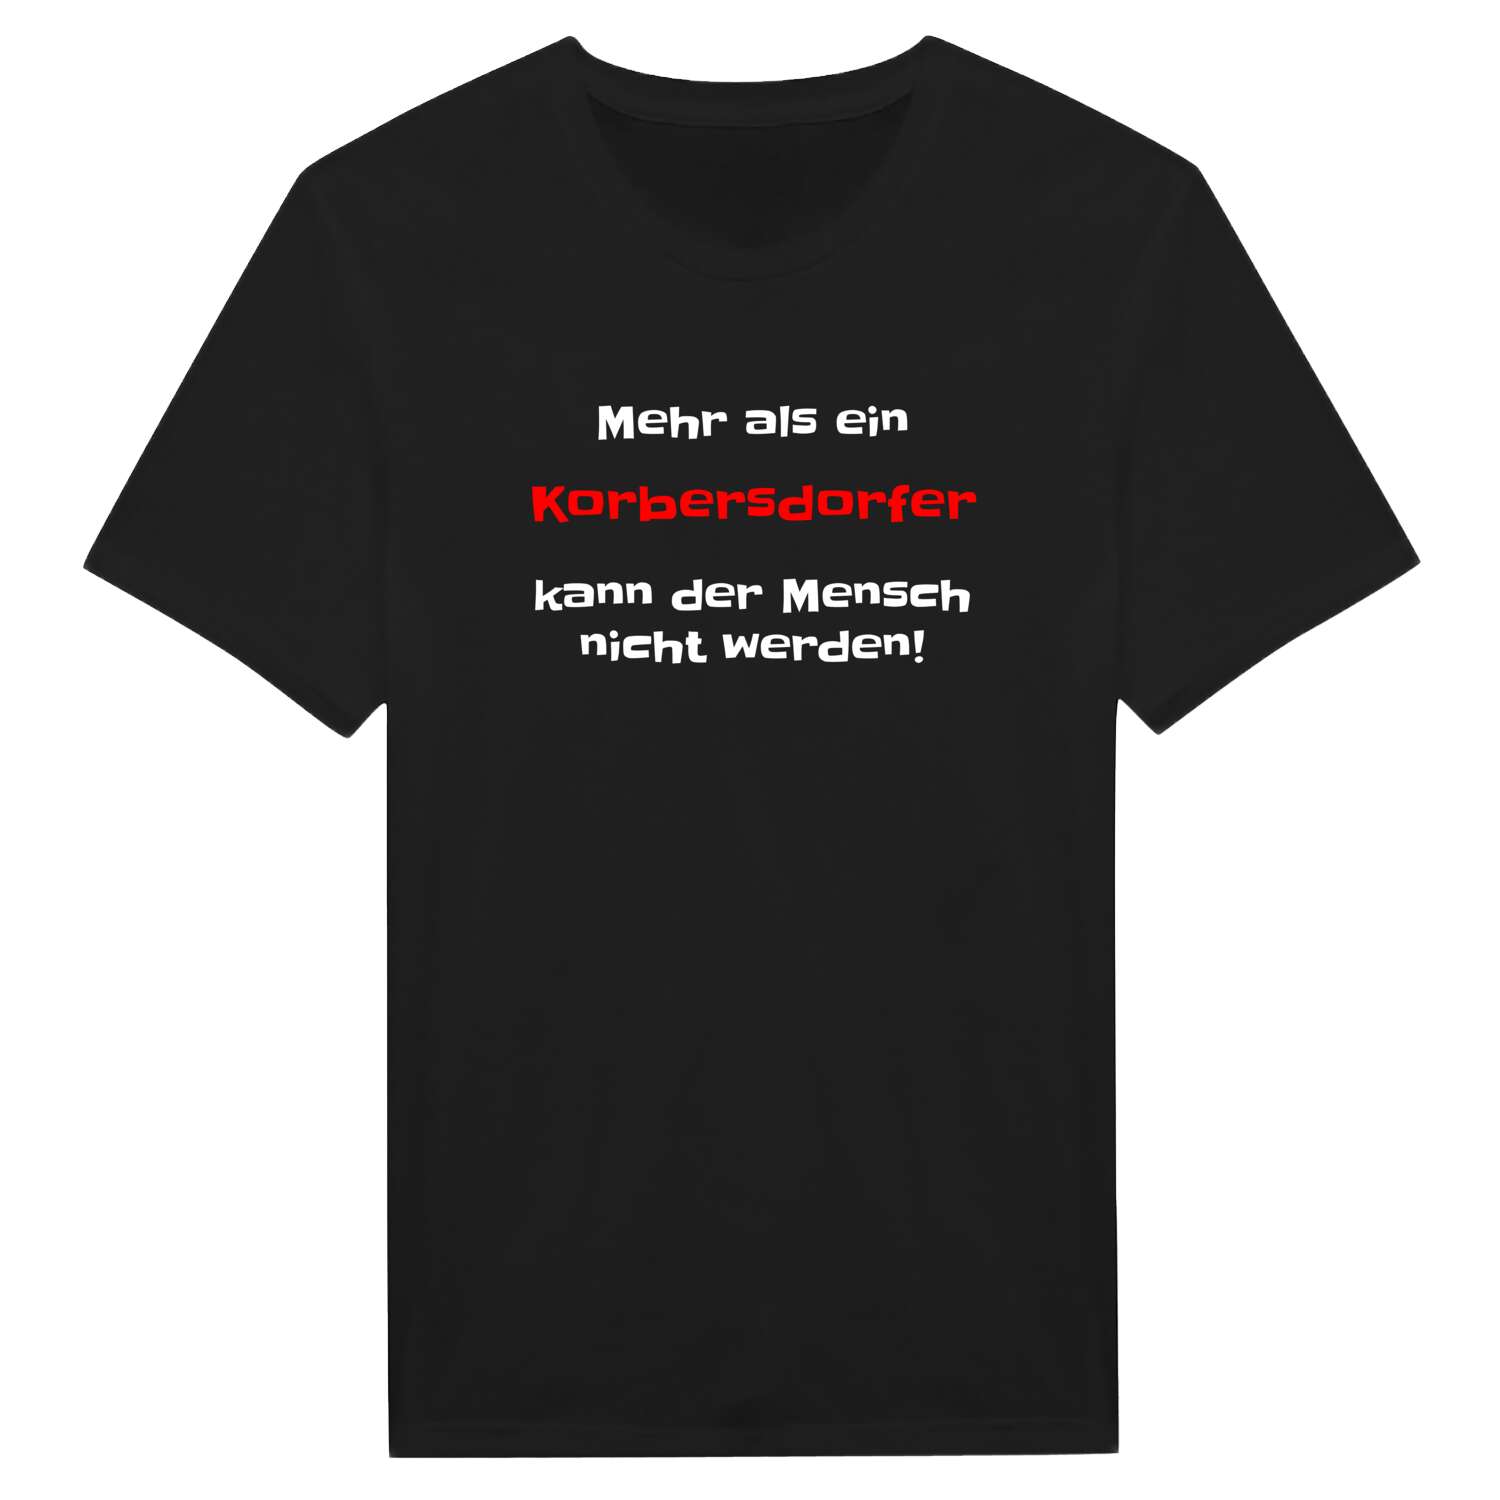 Korbersdorf T-Shirt »Mehr als ein«